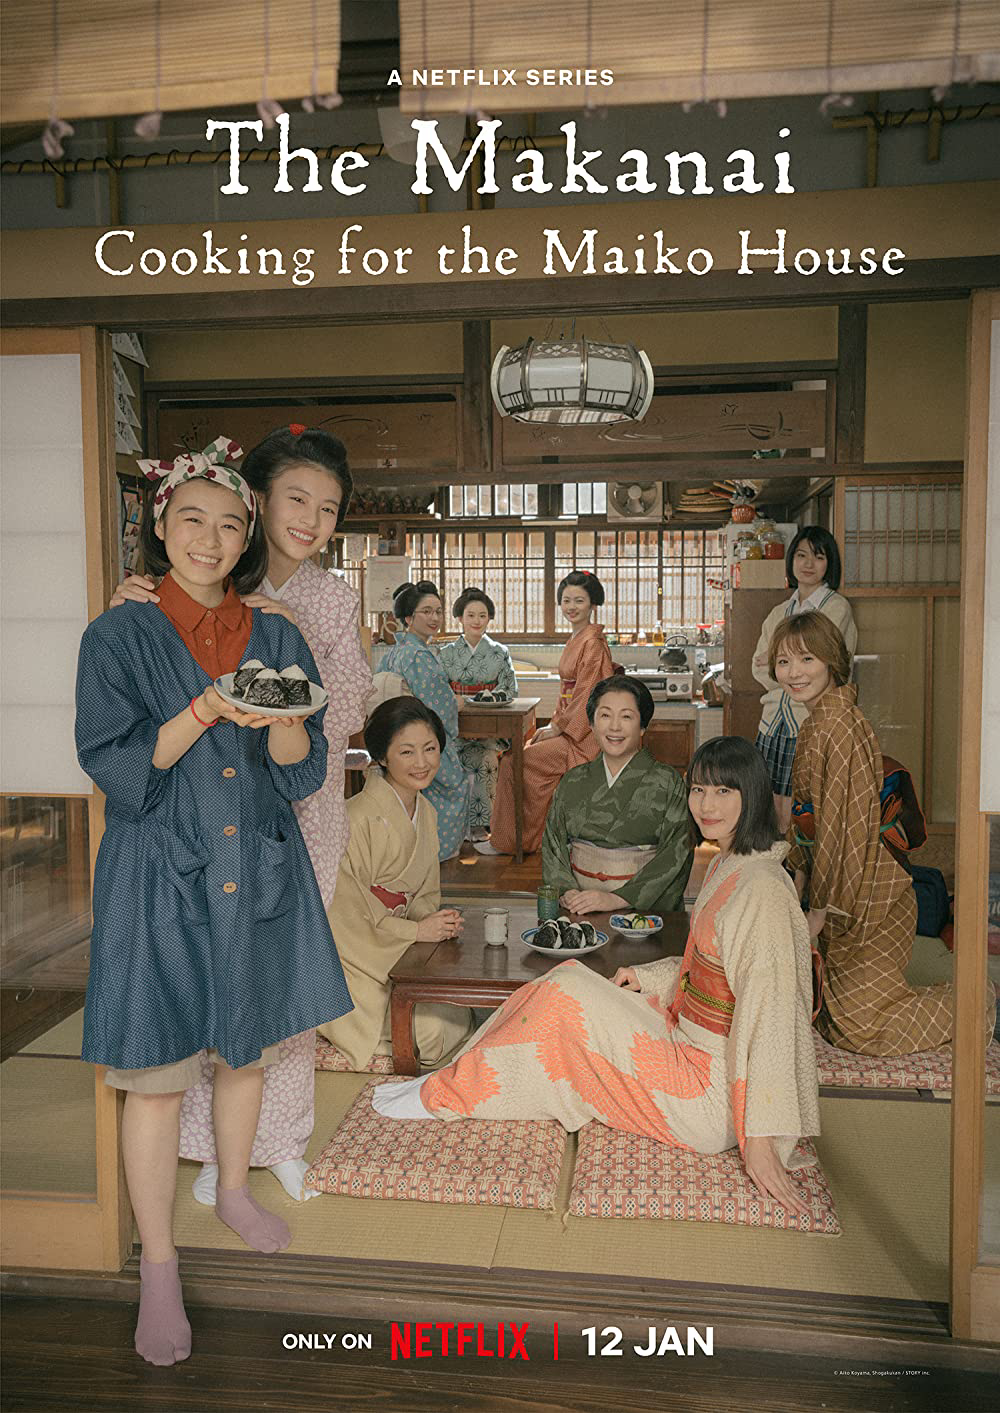 Poster Phim Makanai: Đầu bếp nhà maiko (The Makanai: Cooking for the Maiko House)